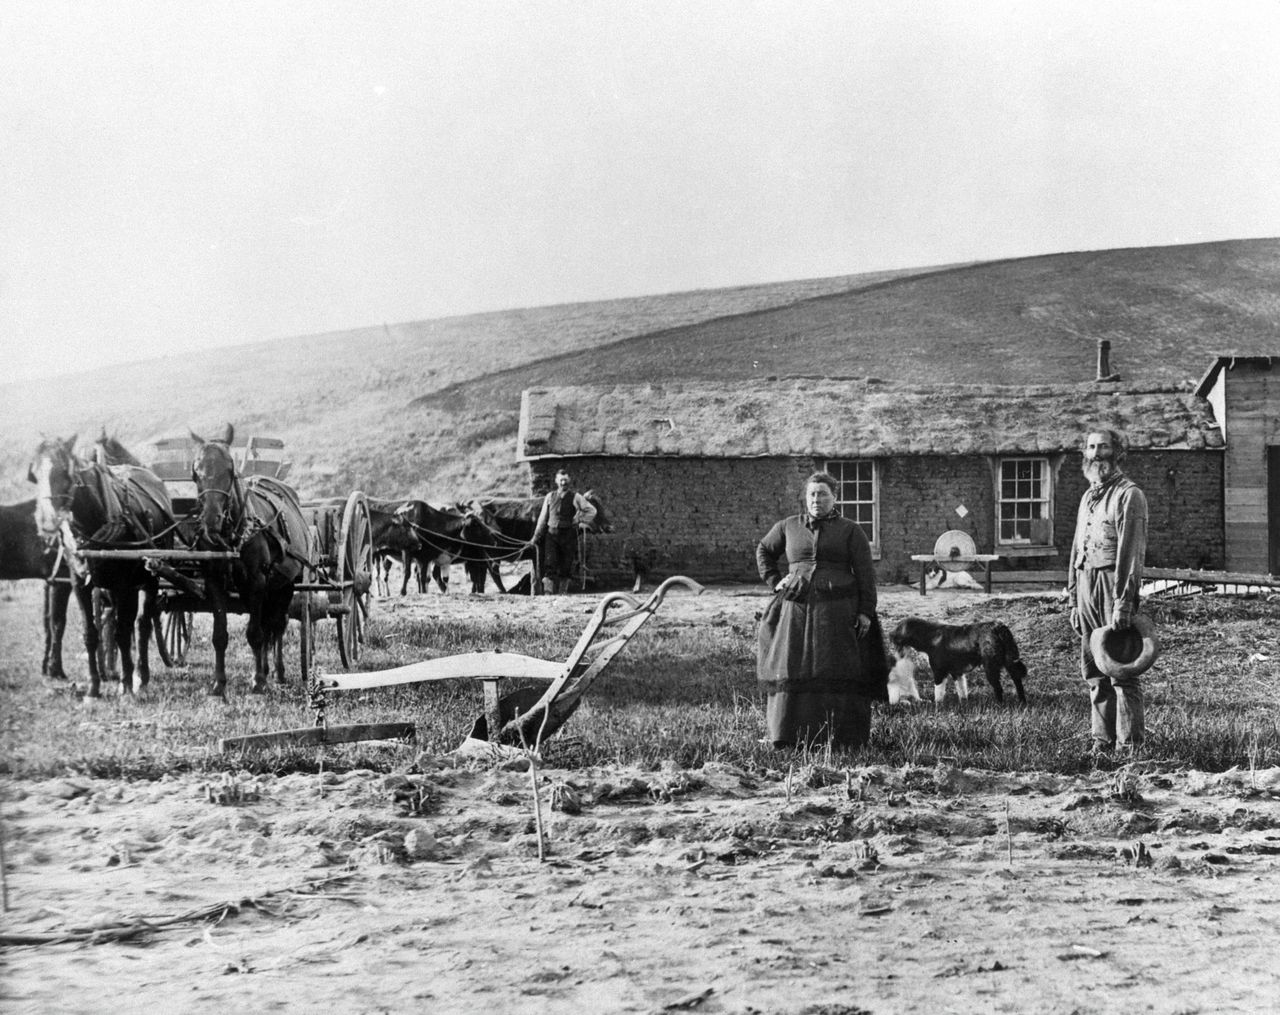 Een pioniersfamilie in Custer County, Nebraska, mid 19de eeuw.